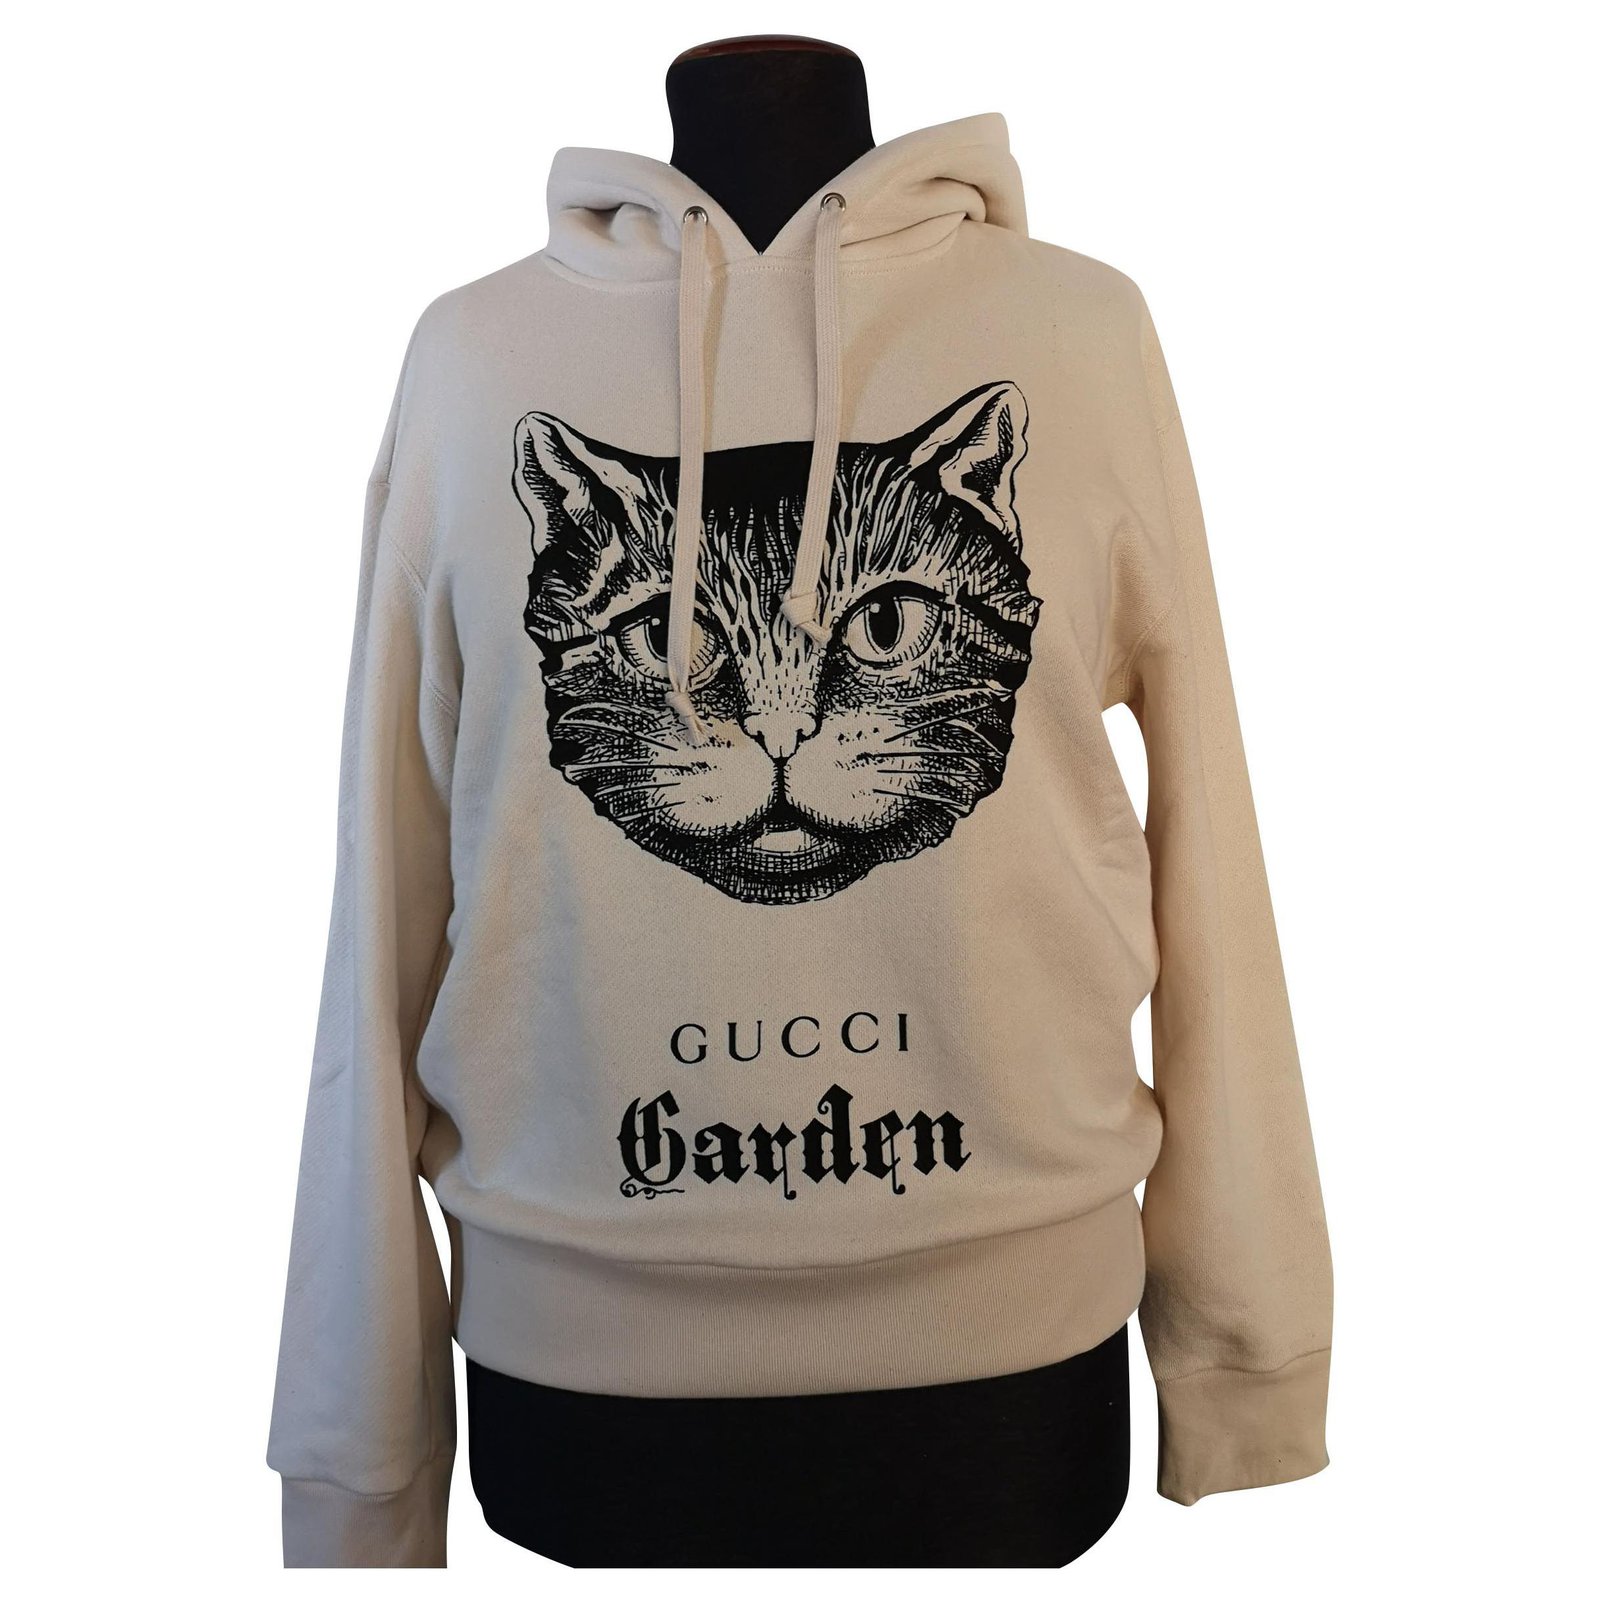 Cat in a Gucci Hoodie Graffiti Art Print